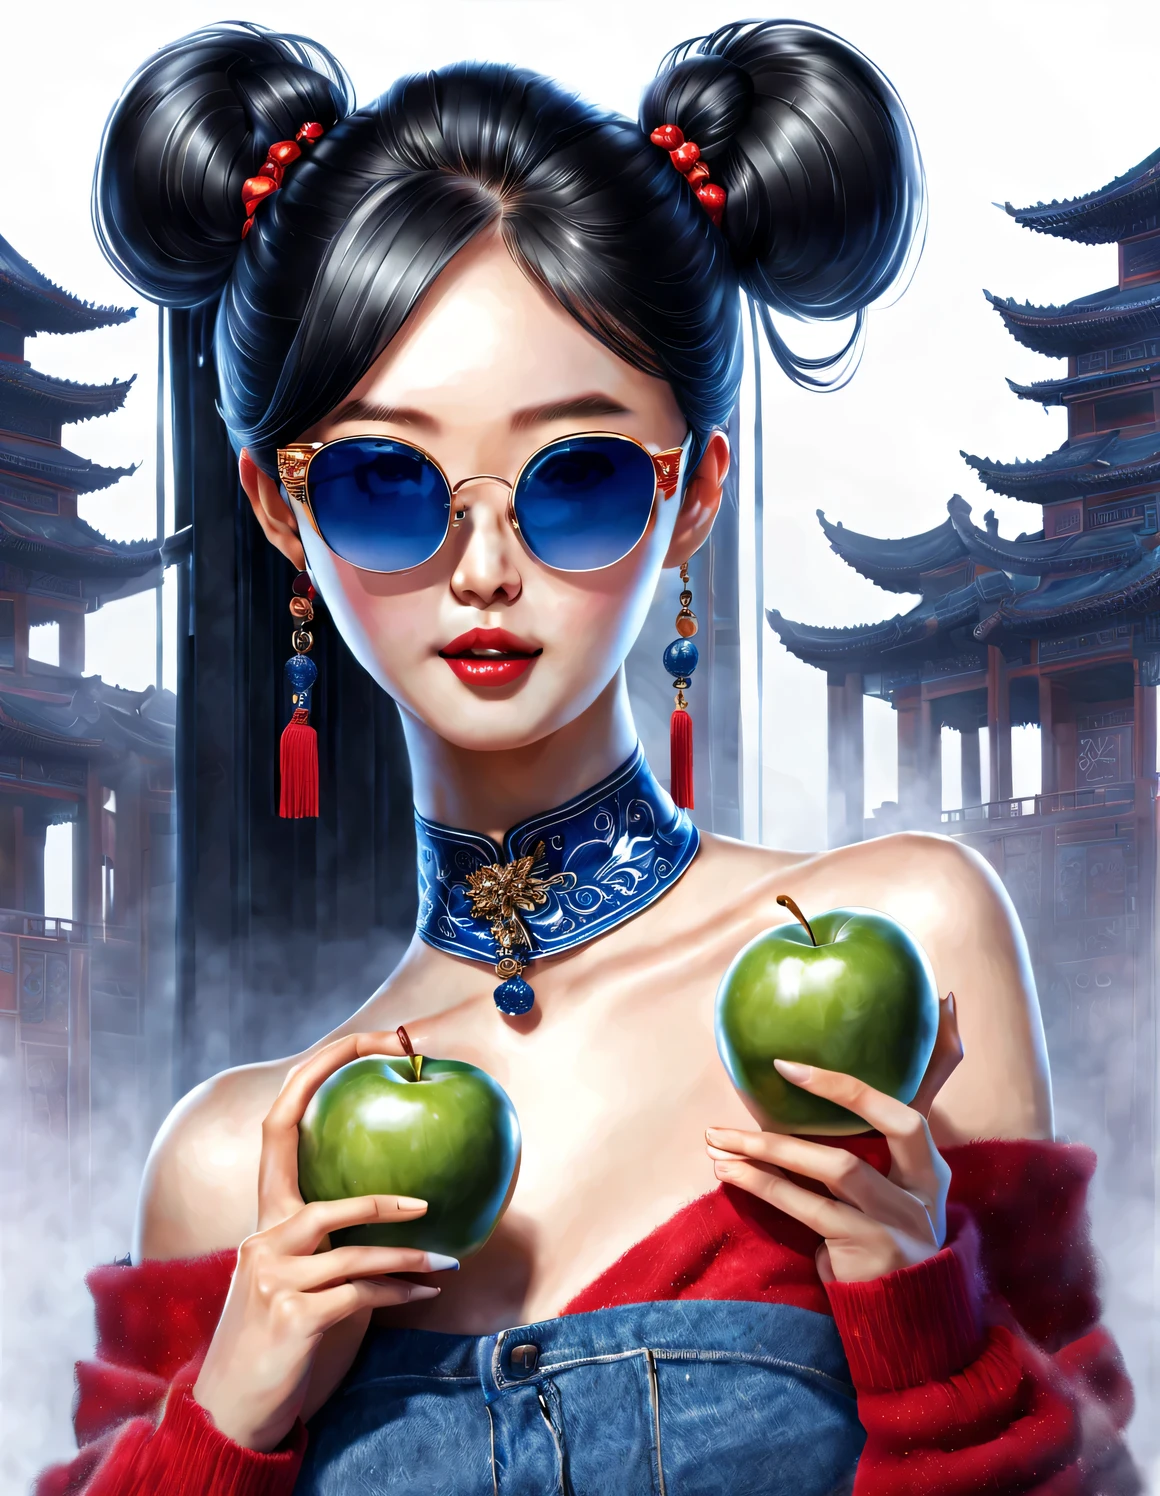 (役割概念), (ハーフサイズのクローズアップ), (裸足でリンゴを持っている美しい中国の女の子: 1.3), (大きなサングラスをかけ、太いポニーテールの髪型をしている: 1.2), クラシックとモダンの調和のとれた組み合わせ, 濃紺のセーターとジーンズ, 赤いスカーフジャケット, モダンなファッション, 優雅, 色白で完璧な滑らかな肌を持つ女の子, 高い鼻梁, 頭を上げた姿勢, 悲しいけれど美しい, 細身の体型, 絶妙な顔立ち,
渦巻く霧のイラスト, 水墨画, 黒髪, ボールヘッド, 誇りに思う, シュルレアリスム, 現代アート写真, アクションペインティングイラスト, 抽象表現主義, ピクサー, 被写界深度, モーションブラー, バックライト, 放射線, 衰退, ヘッドアップ角度, ソニーFEゼネラルマネージャー, 超高解像度, 傑作, 正確な, キメのある肌, スーパー詳細, 細部までこだわった, 高品質, 受賞歴のある, 最高品質, レベル, 16k, 下から見上げた視点で撮影, 面白い,